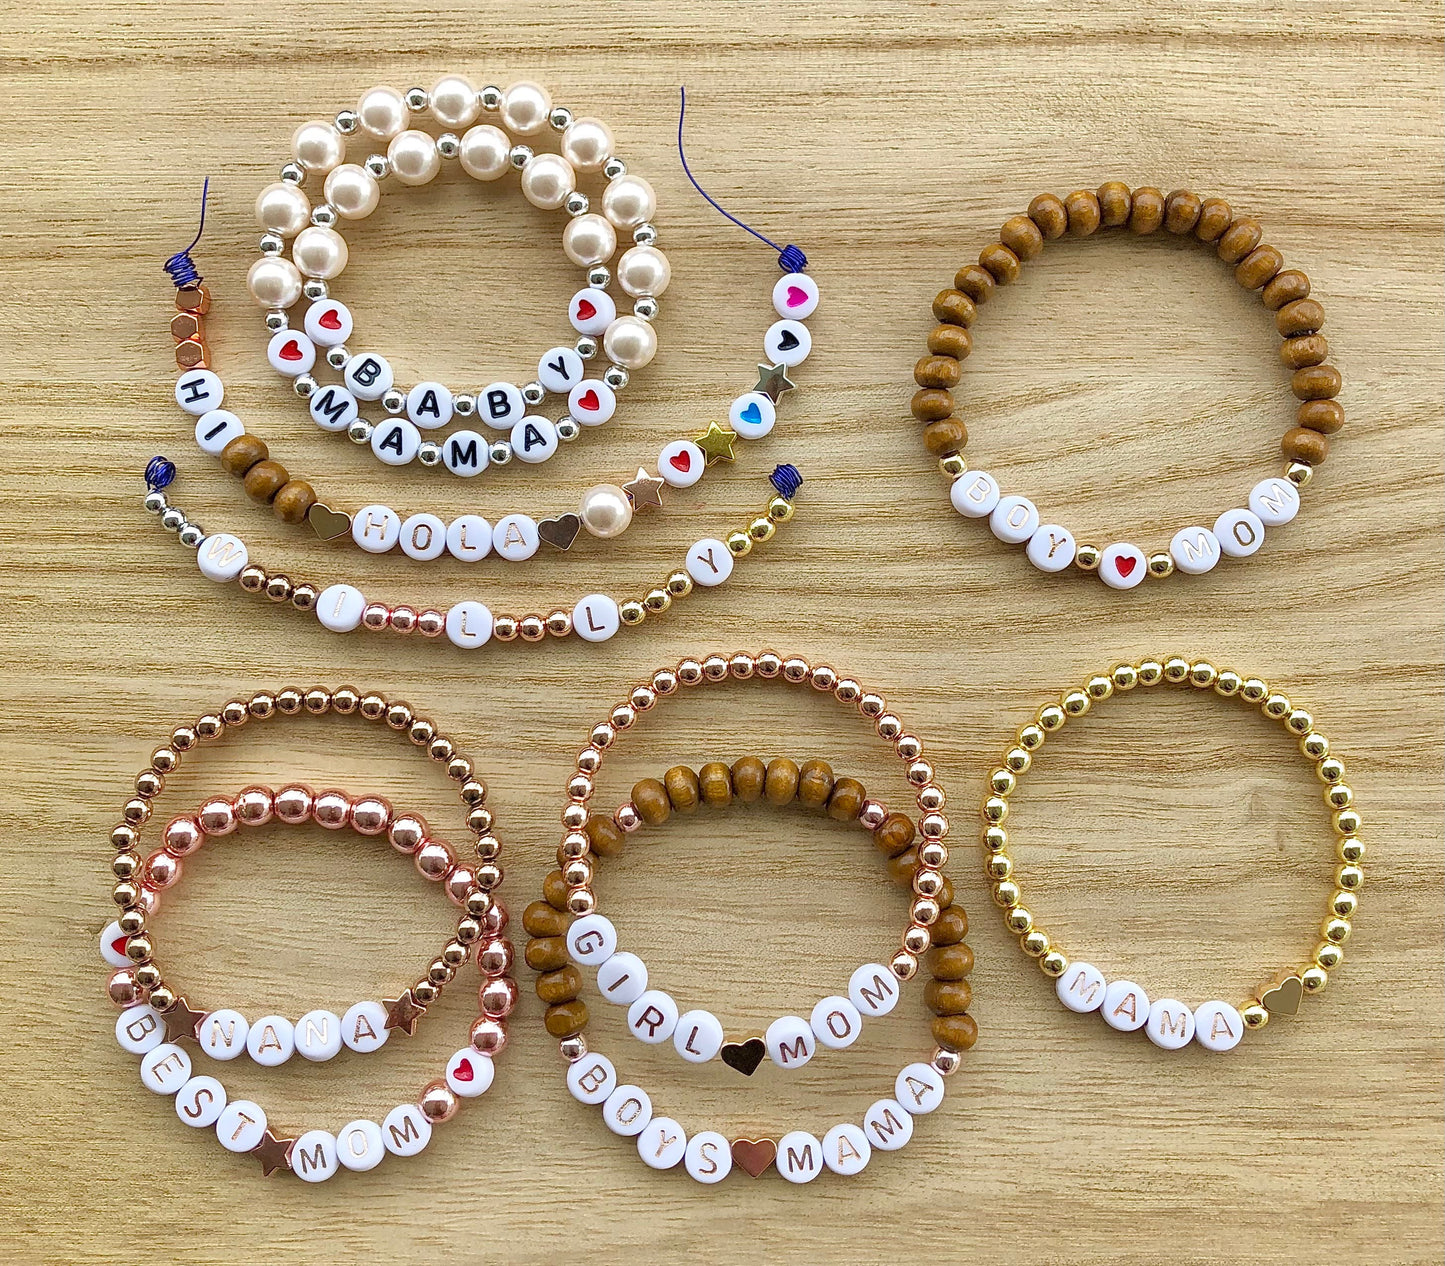 Girl mom bracelet / Girl's mom gift / New mom gift / custom bracelet